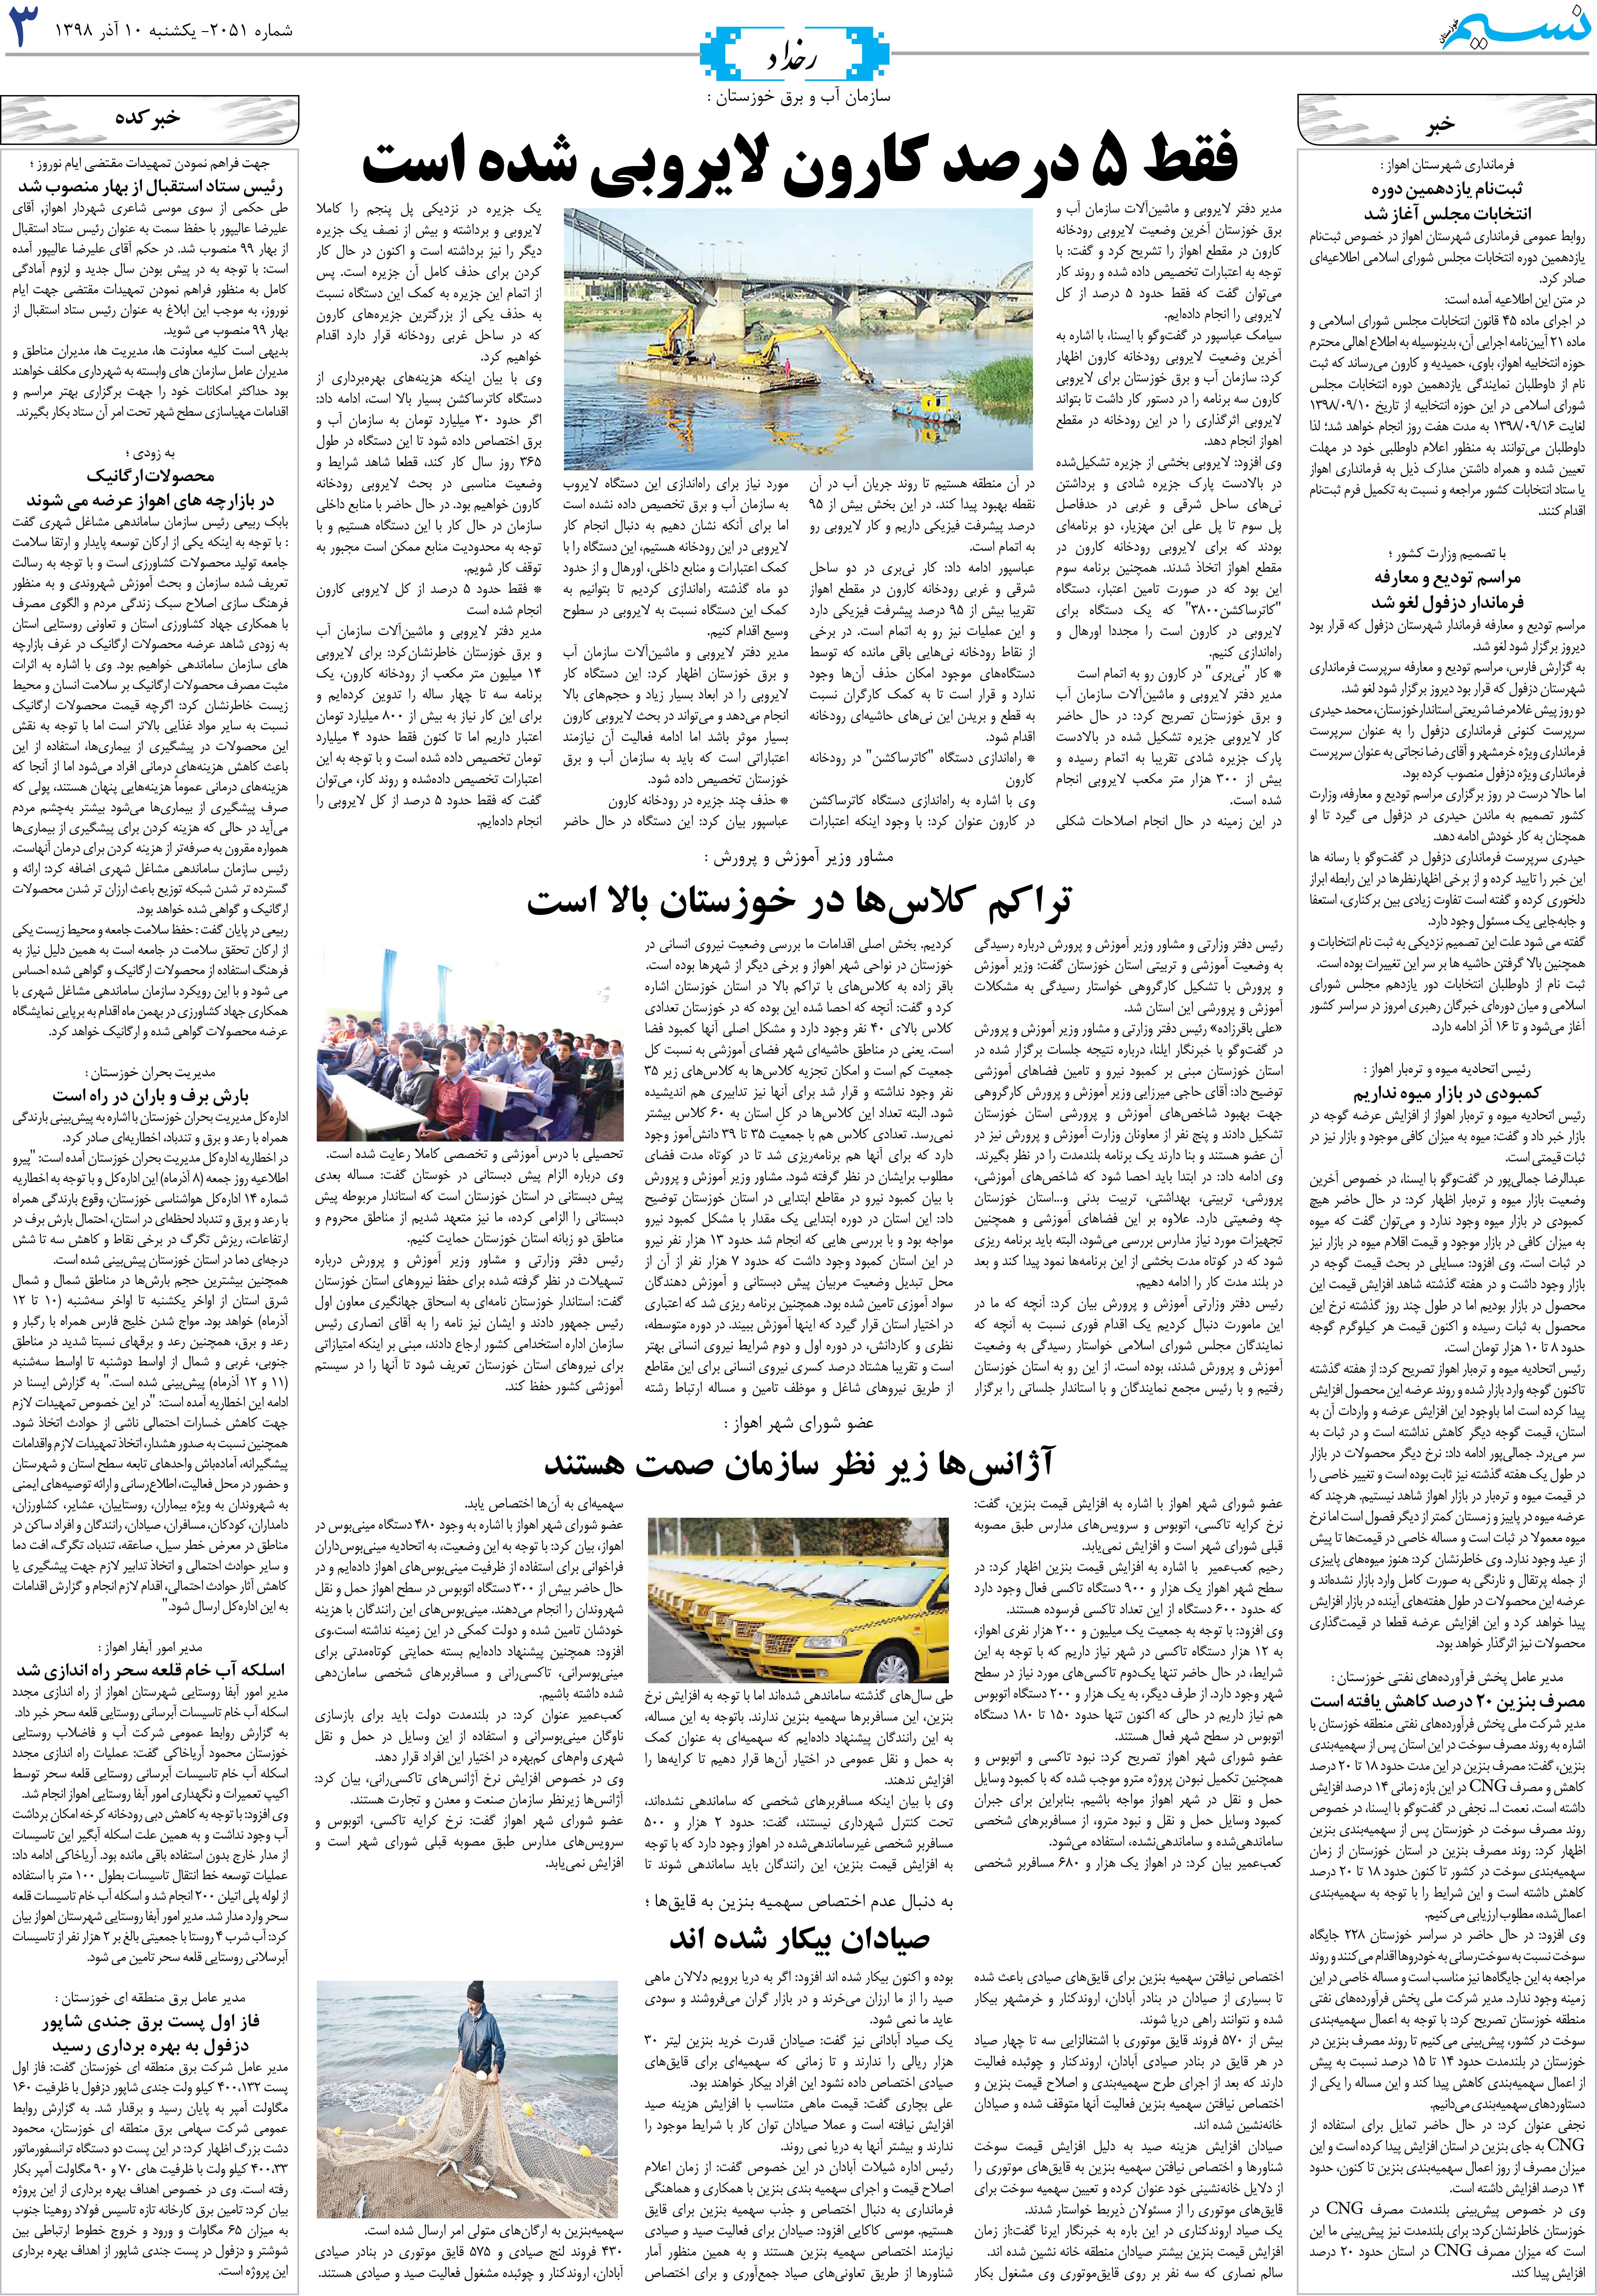 صفحه رخداد روزنامه نسیم شماره 2051